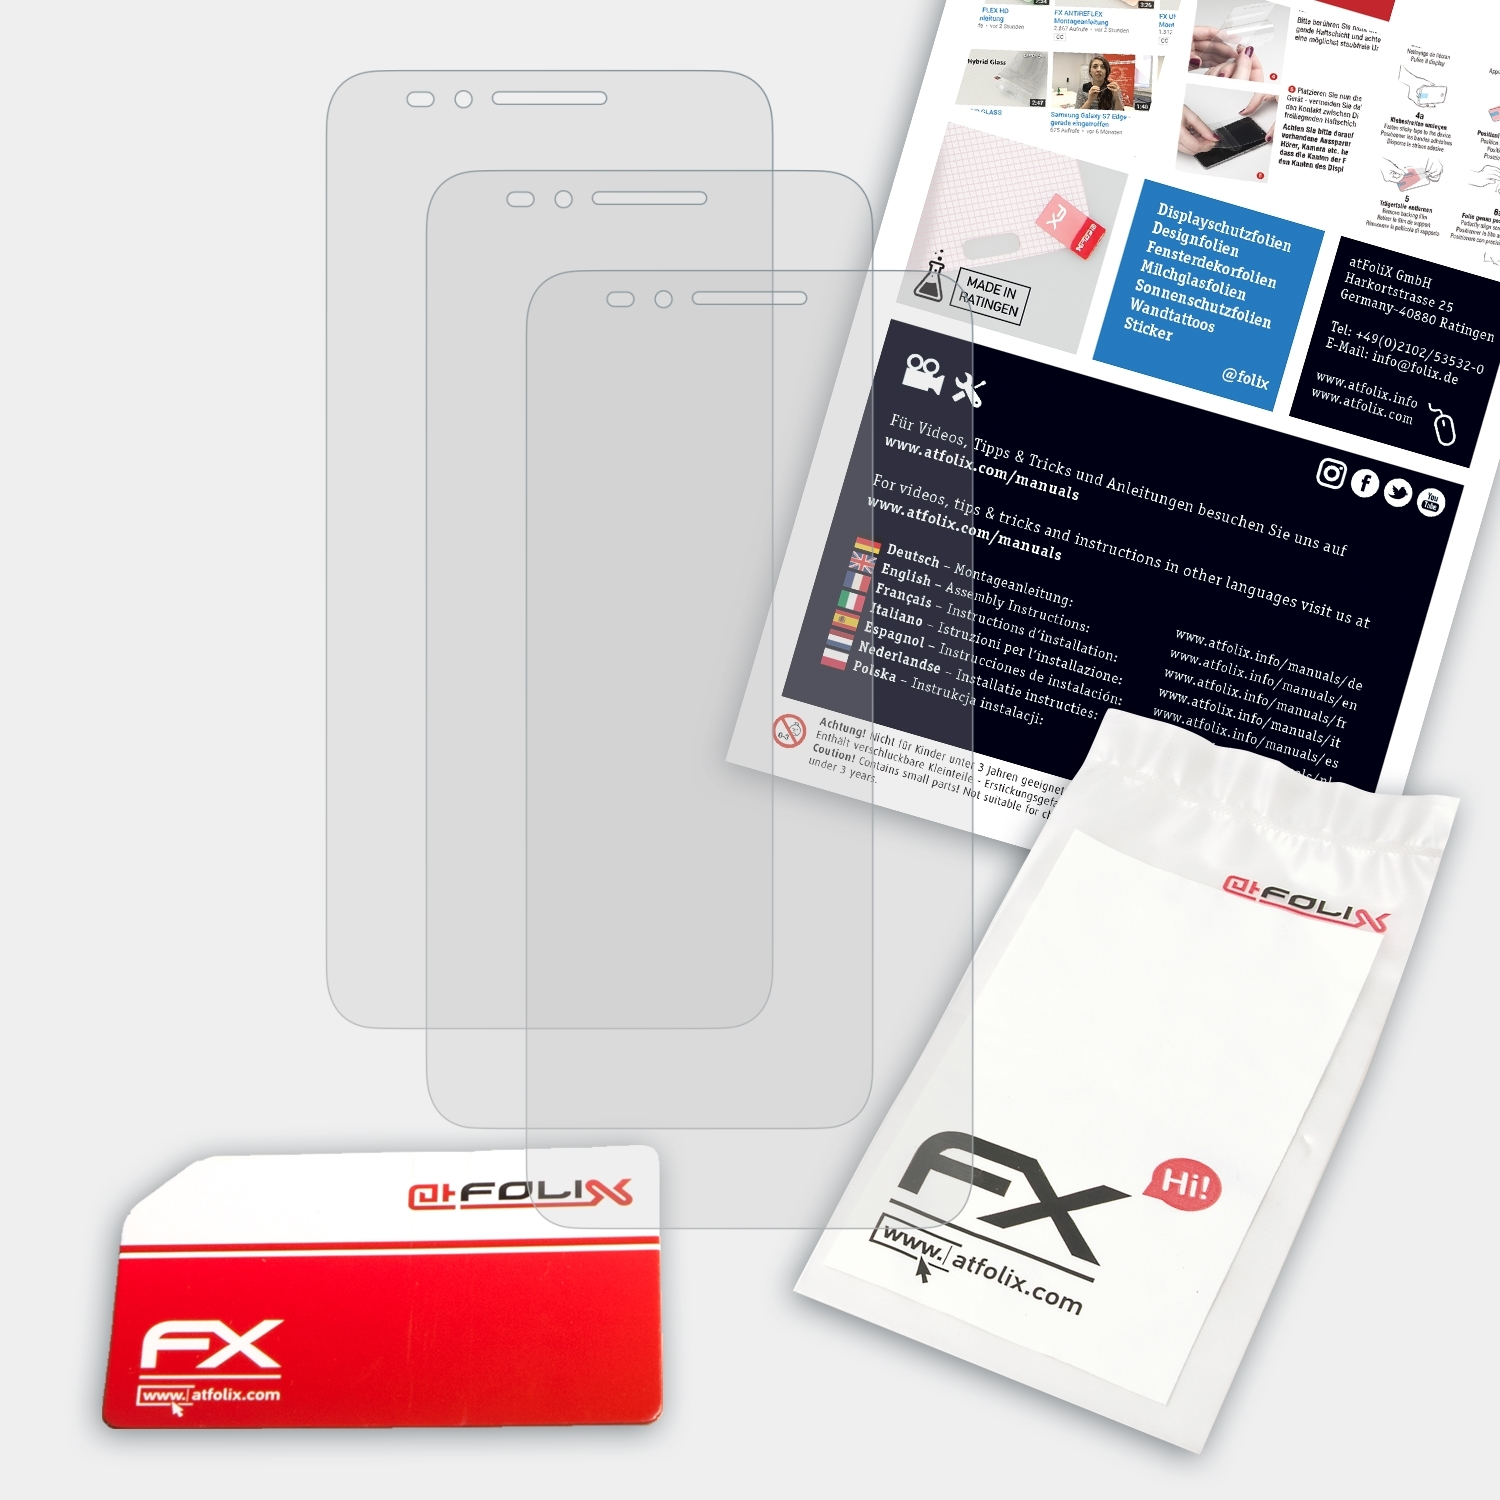 FX-Antireflex 3x Displayschutz(für ATFOLIX A610) ZTE Blade